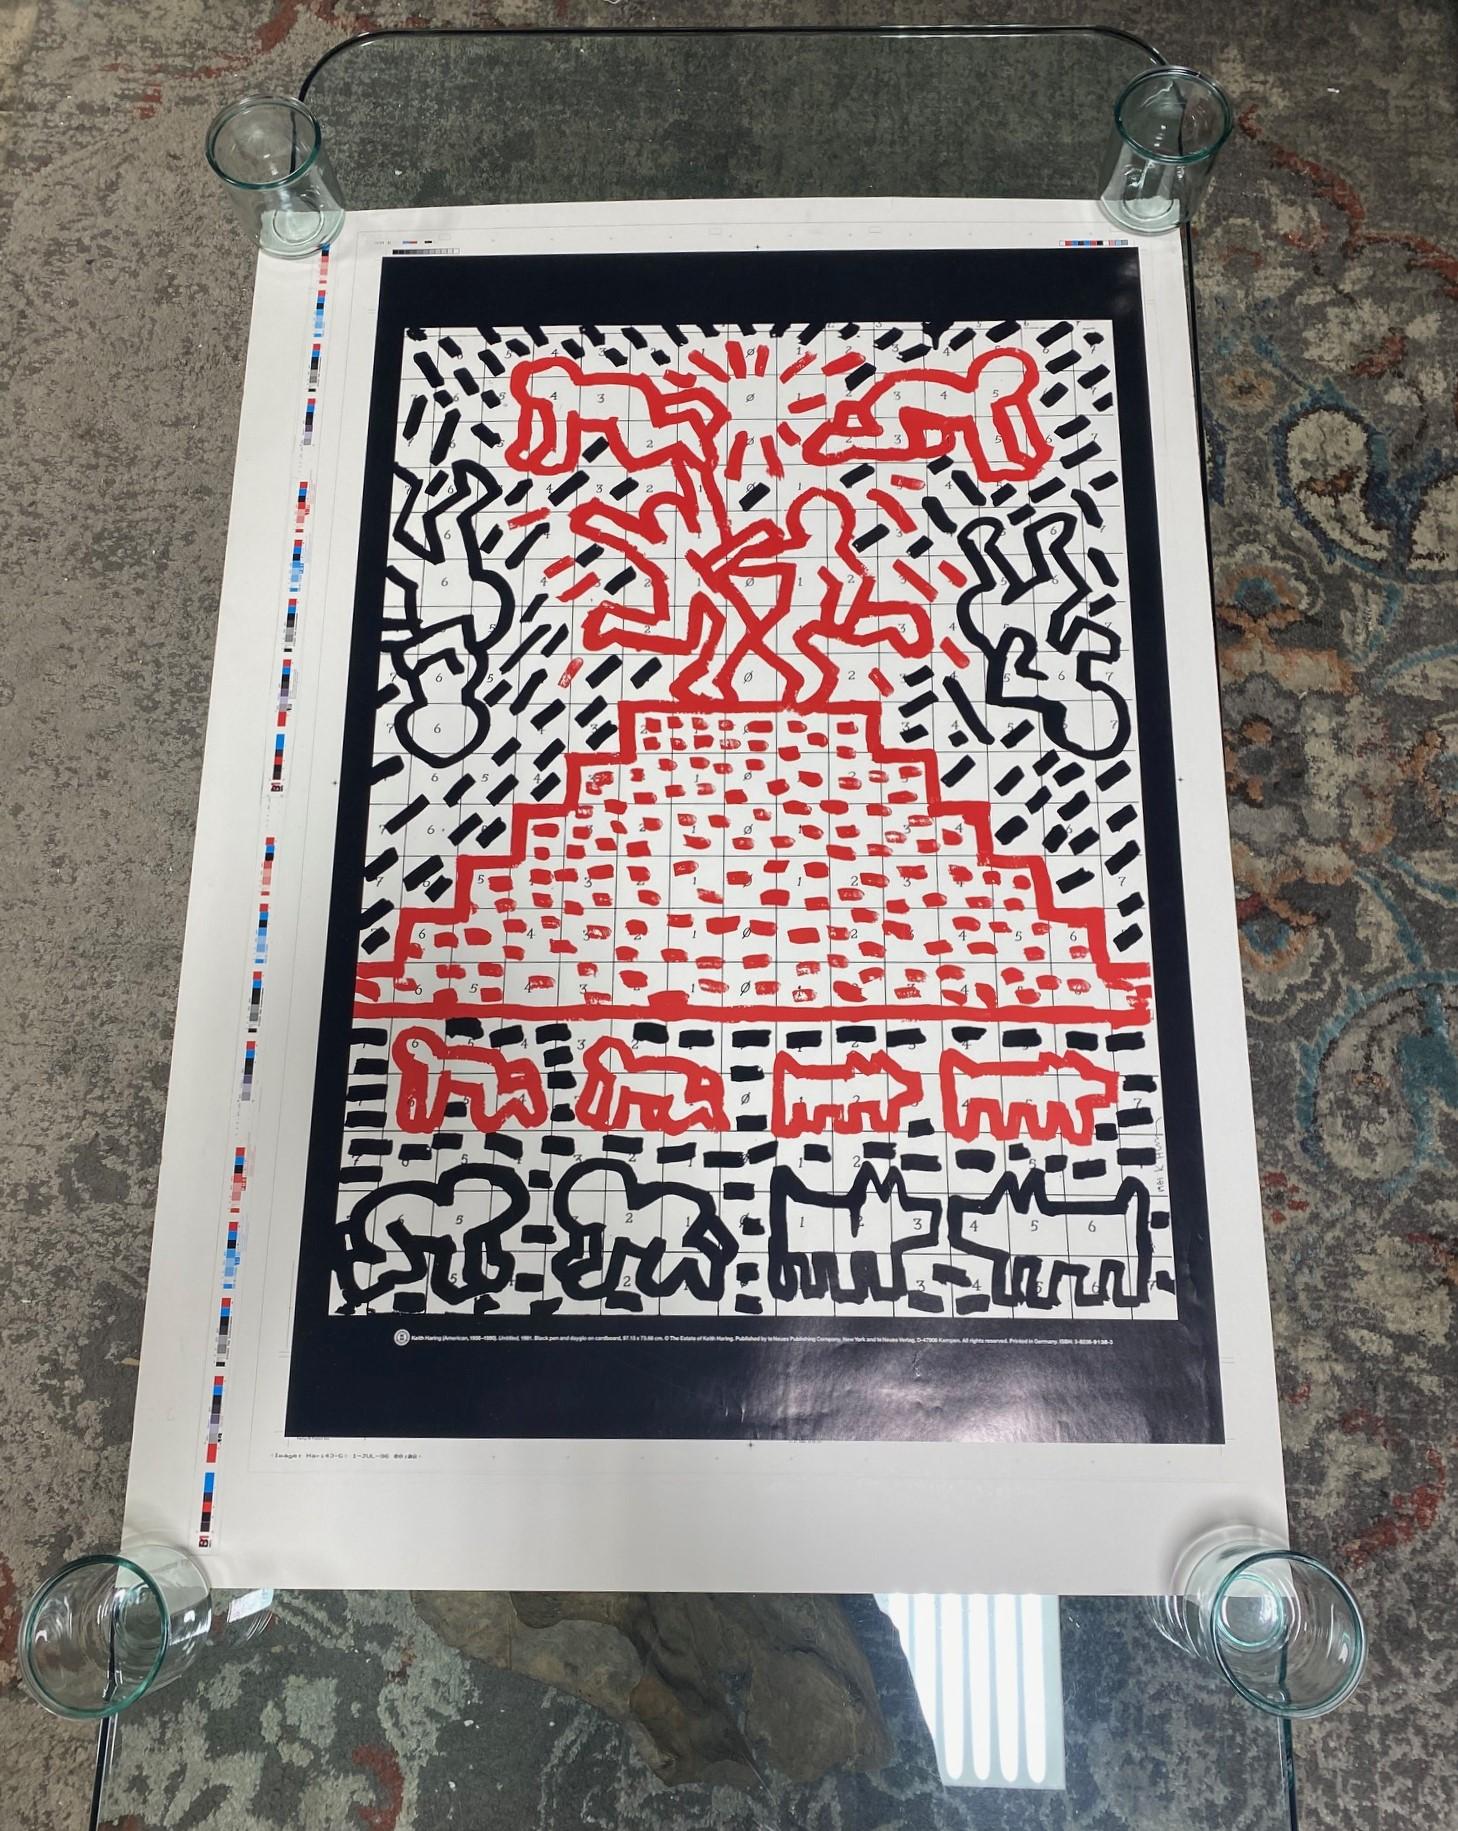 Eine seltene und extrem schwer zu finden Vintage Keith Haring (1958-1990) Pop Shop Art Offset-Lithographie-Poster (ohne Titel, aber oft als seine 